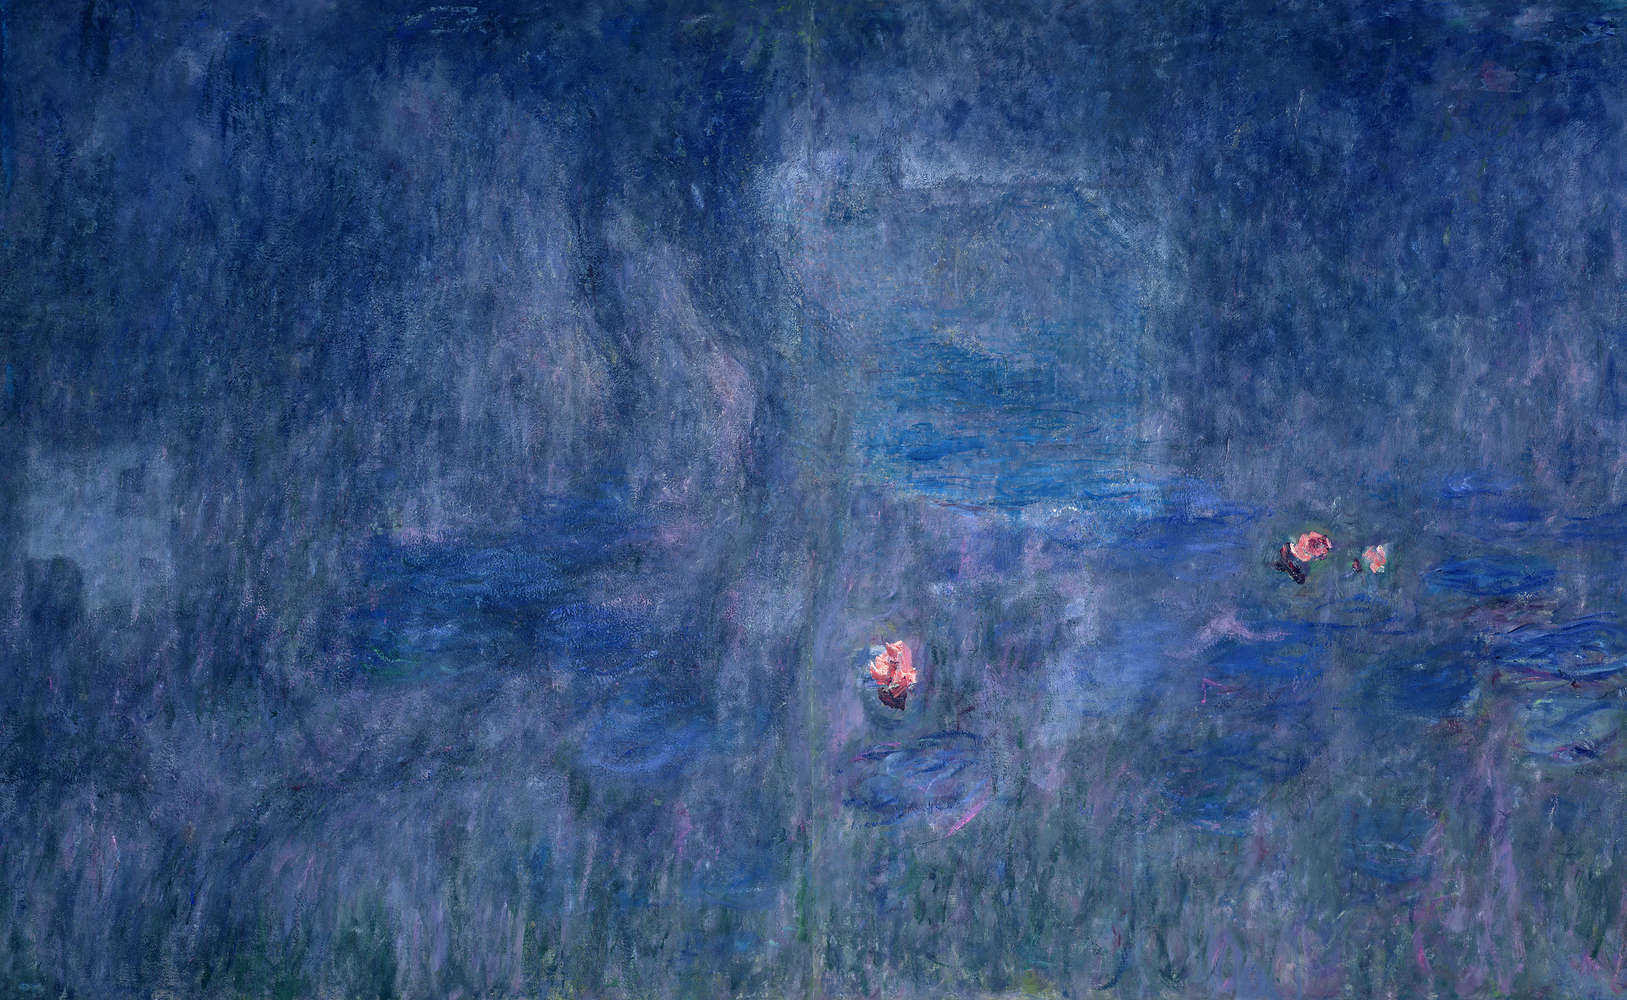             Mural "Nenúfares: reflejo de los árboles" de Claude Monet
        